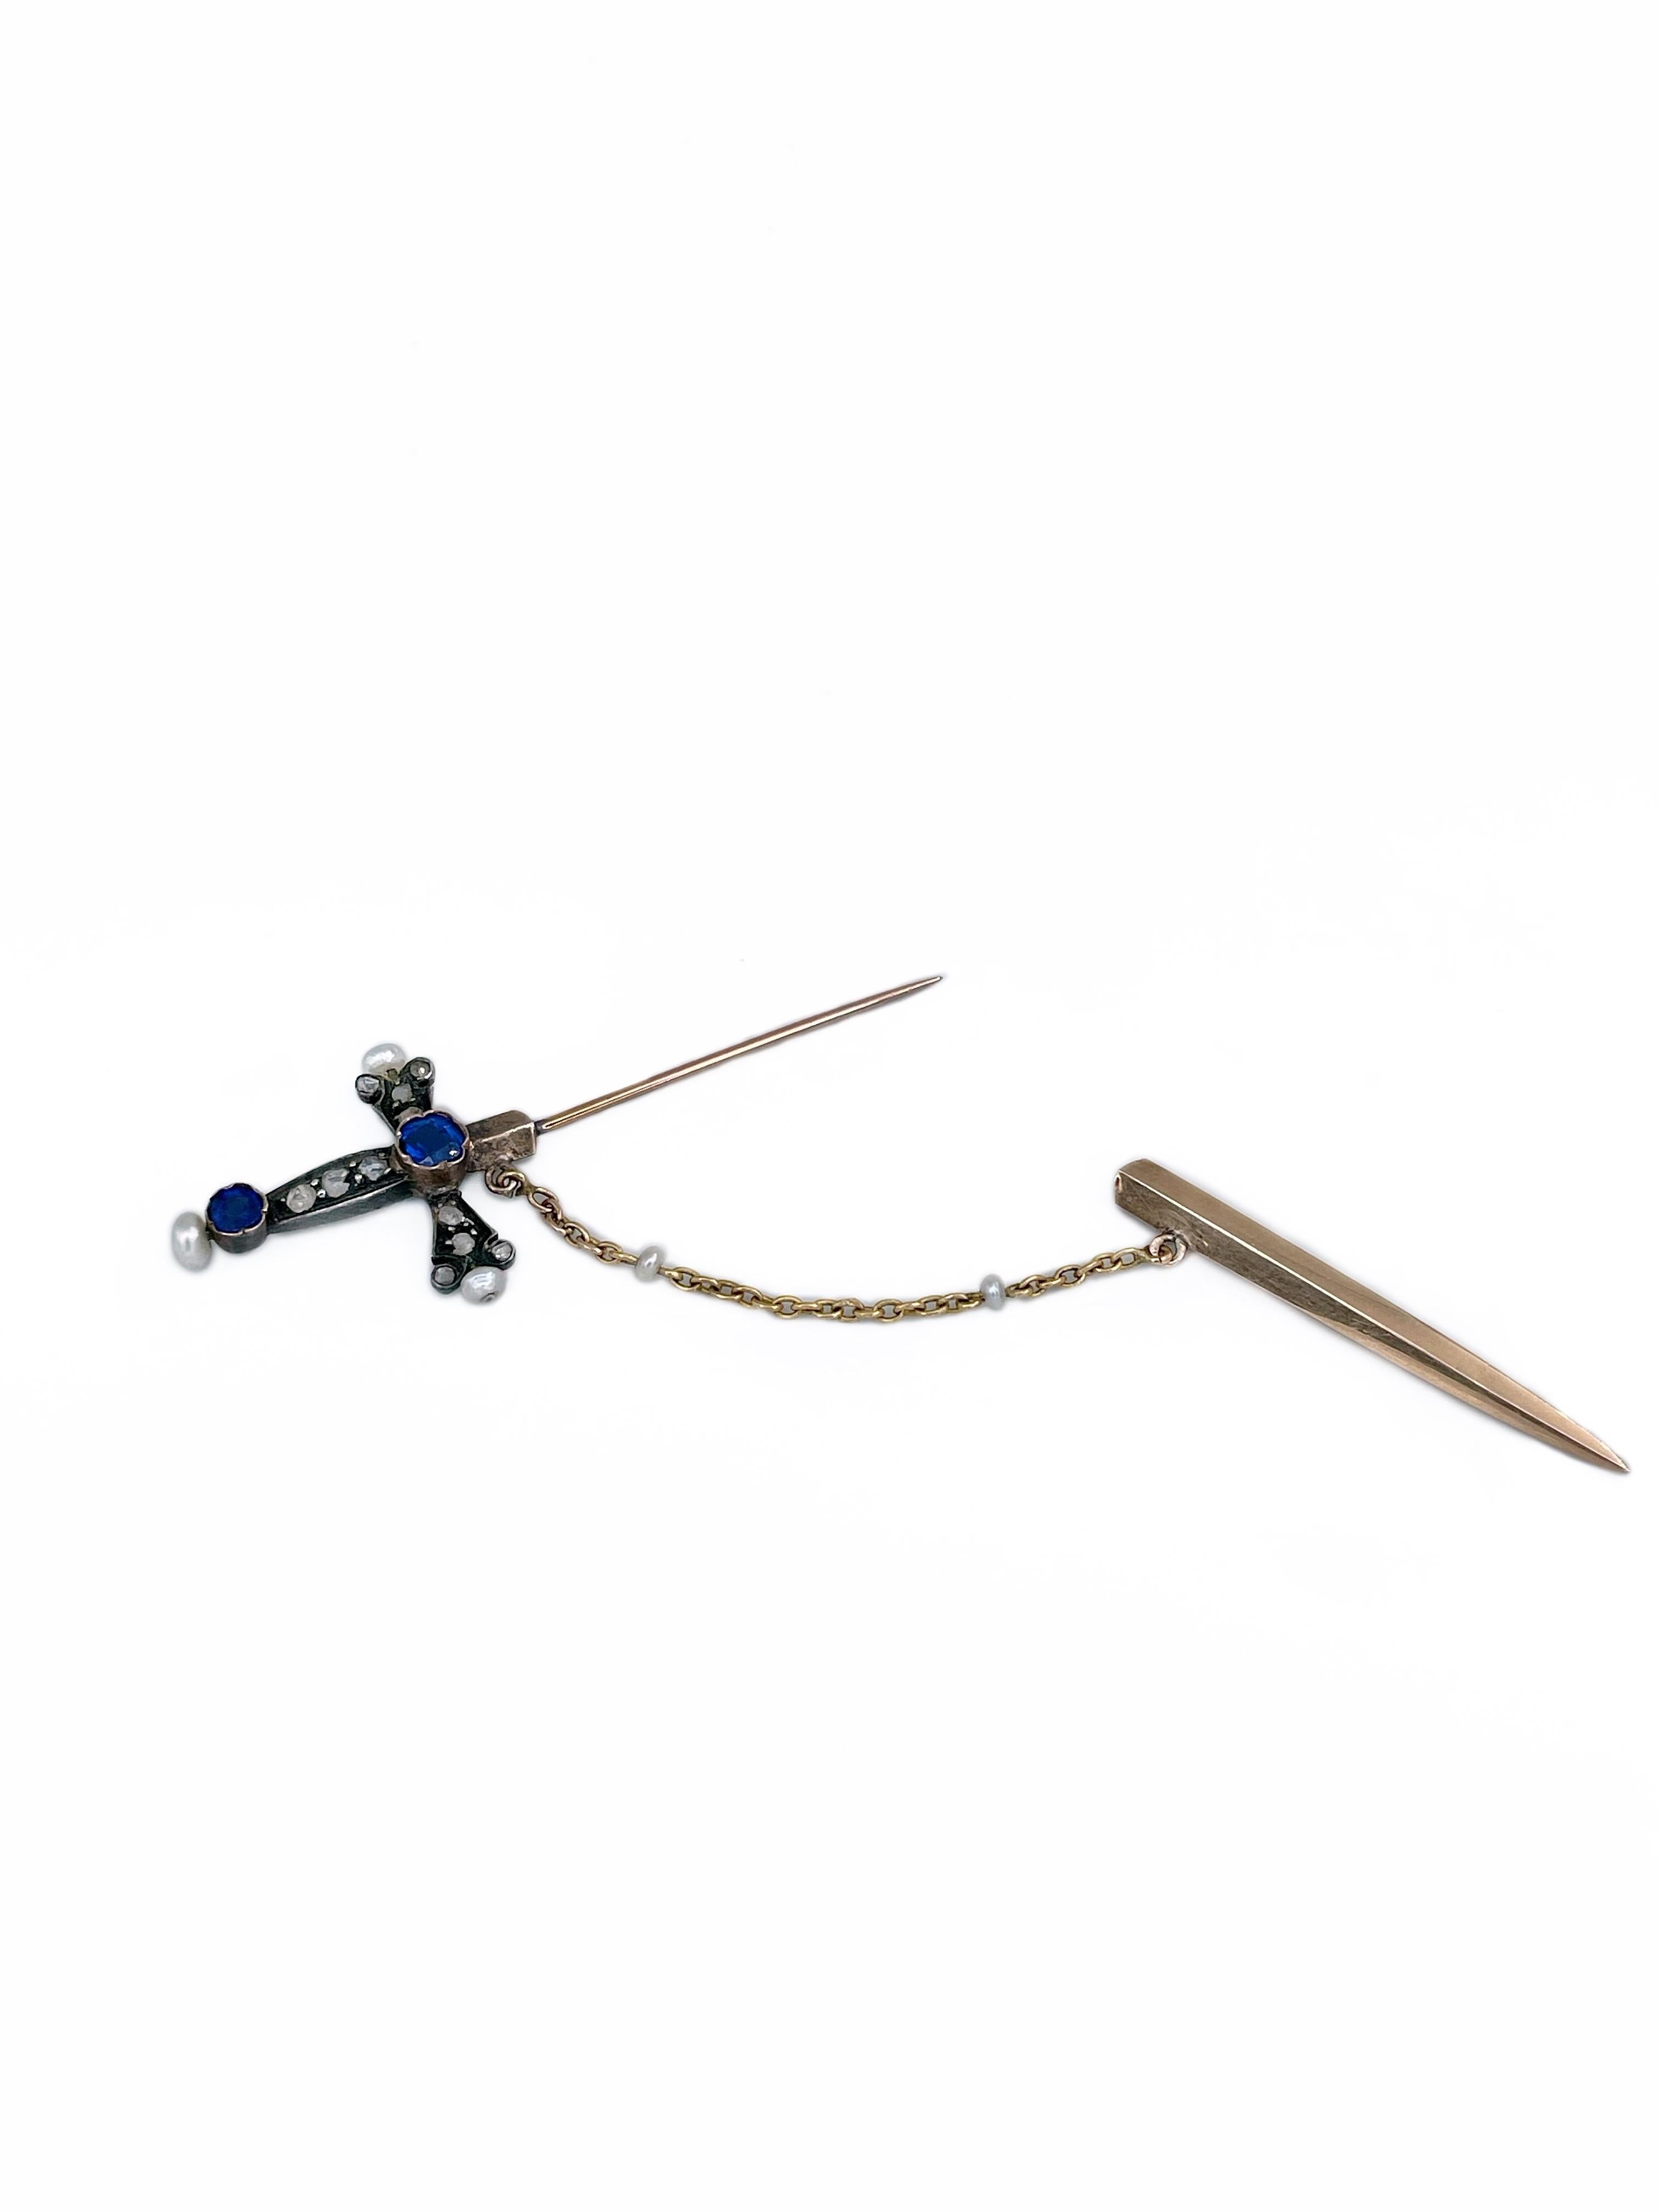 Victorian 18 Karat Gold Rose Cut Diamond Seed Pearl Jabot Sword Stick Pin Brooch 1